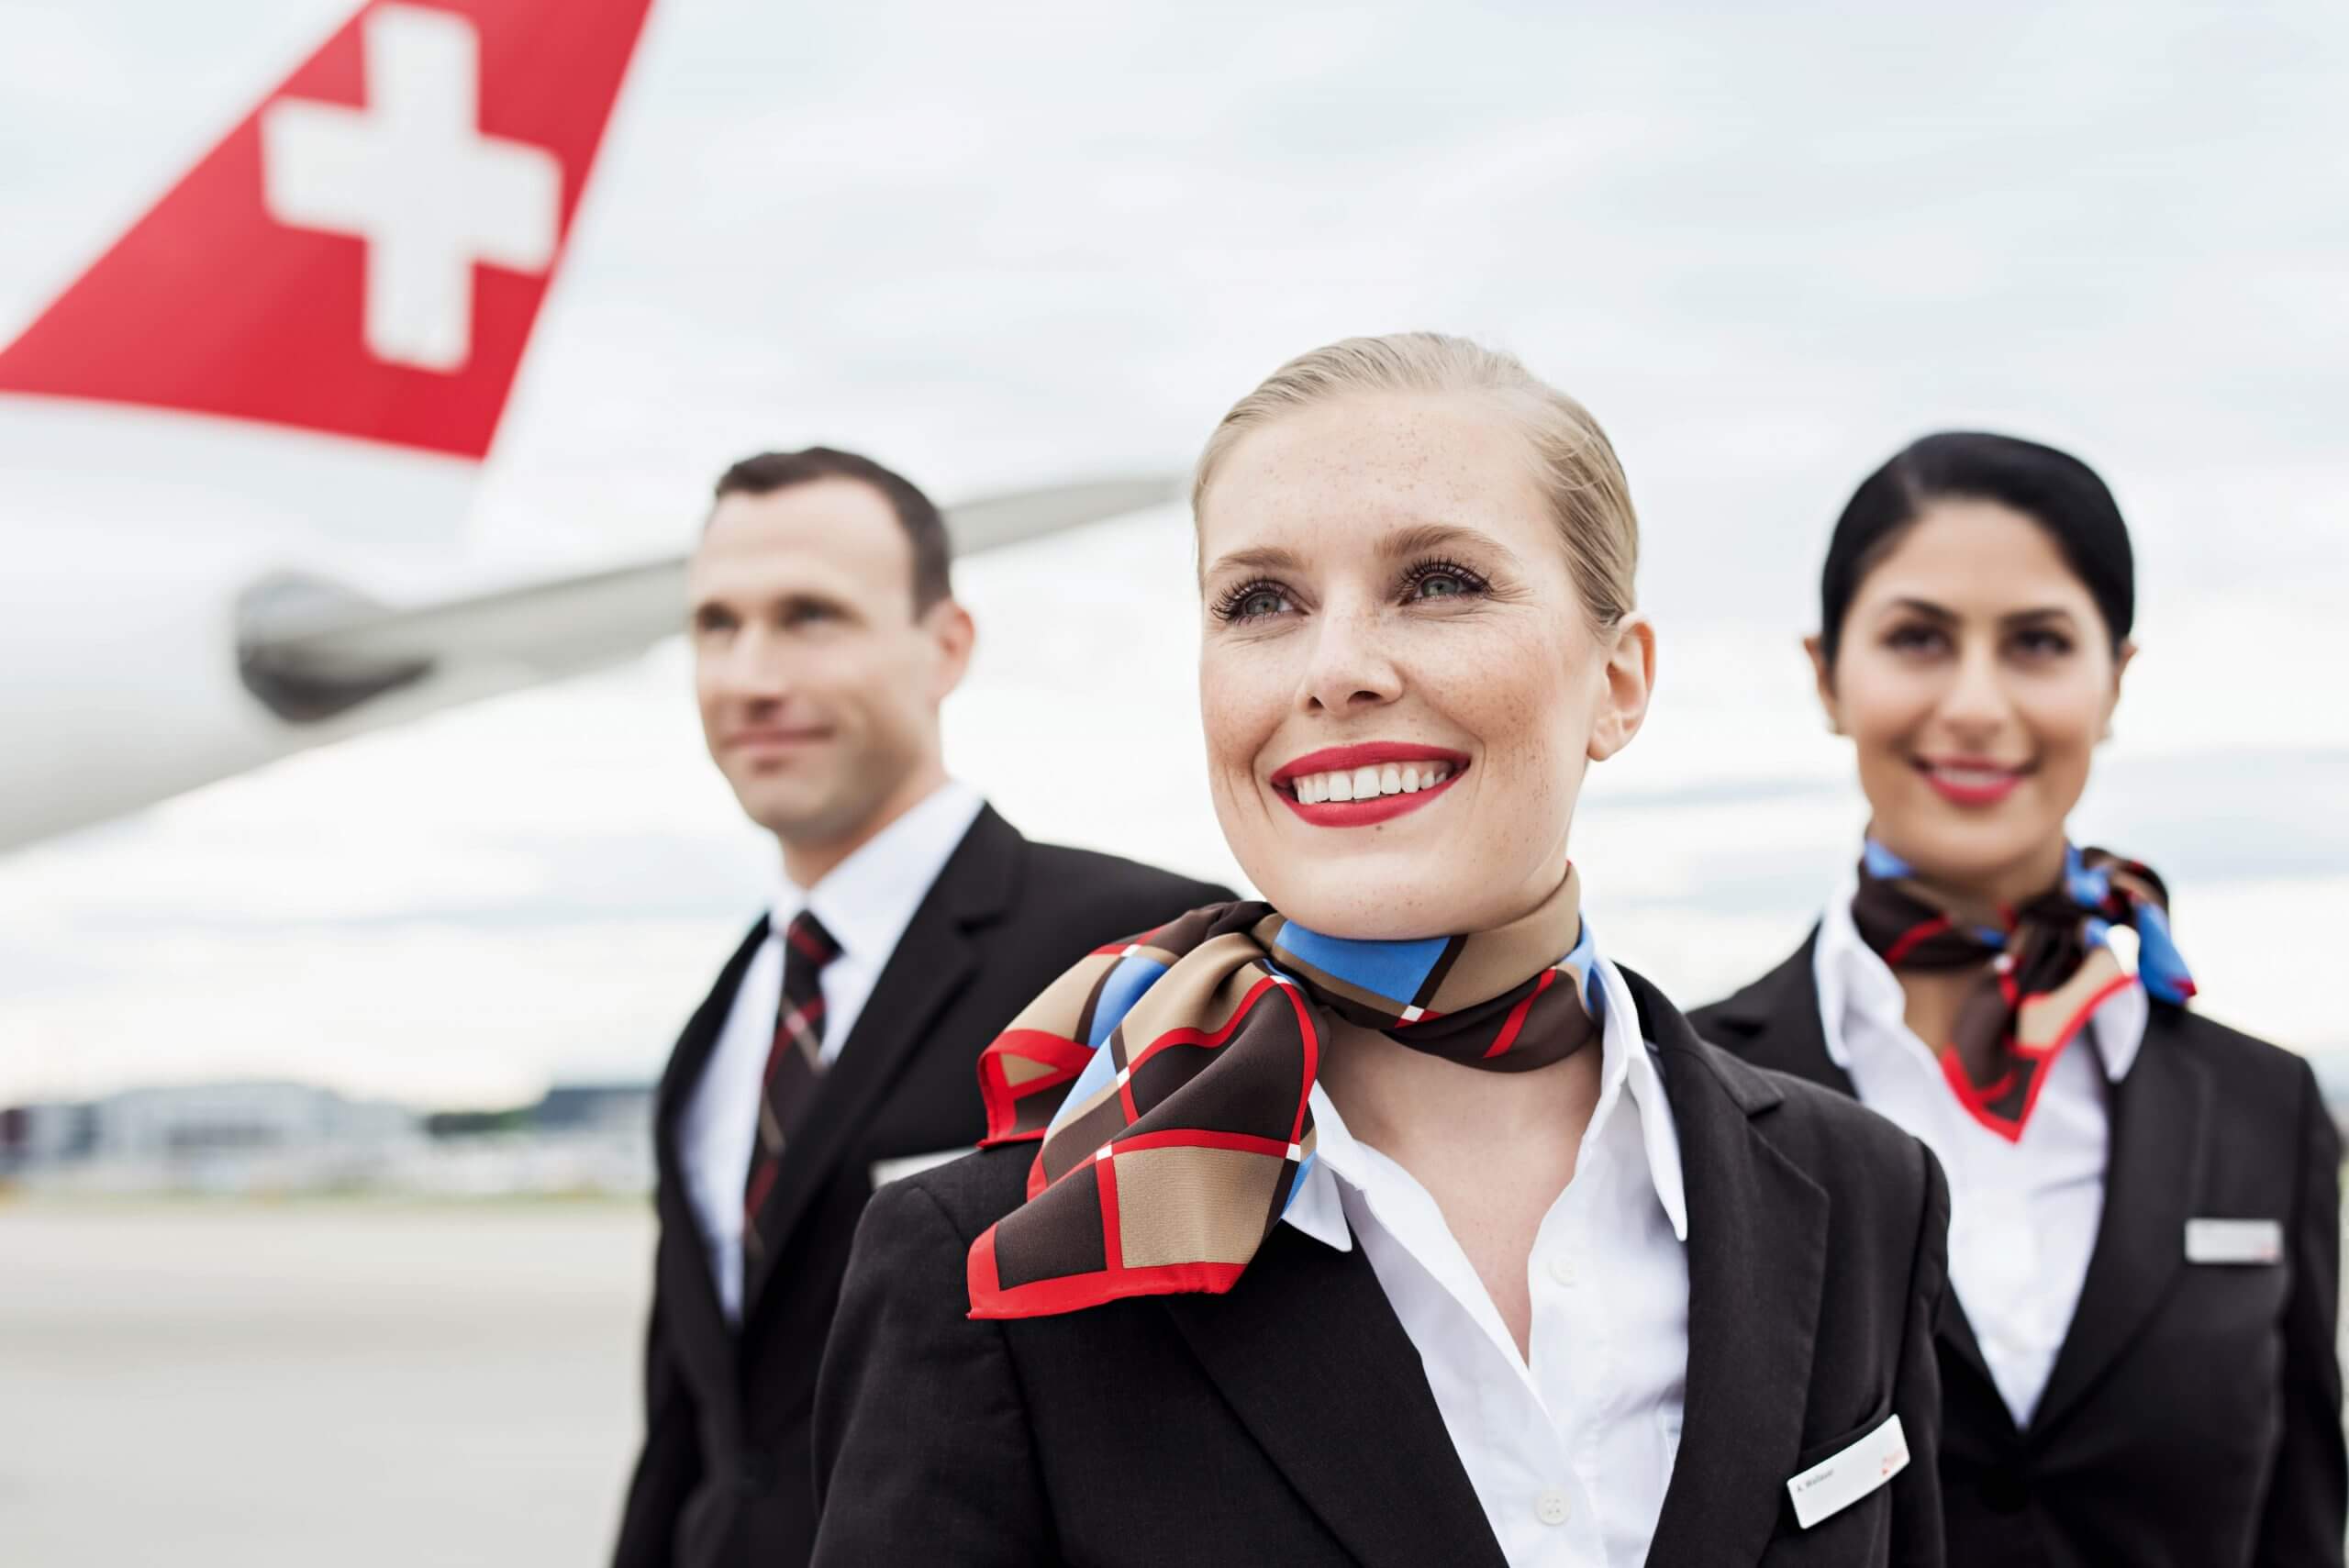 Swiss airlines Switzerland Cabin Crew Recruitment 2022 Zurich Check details 